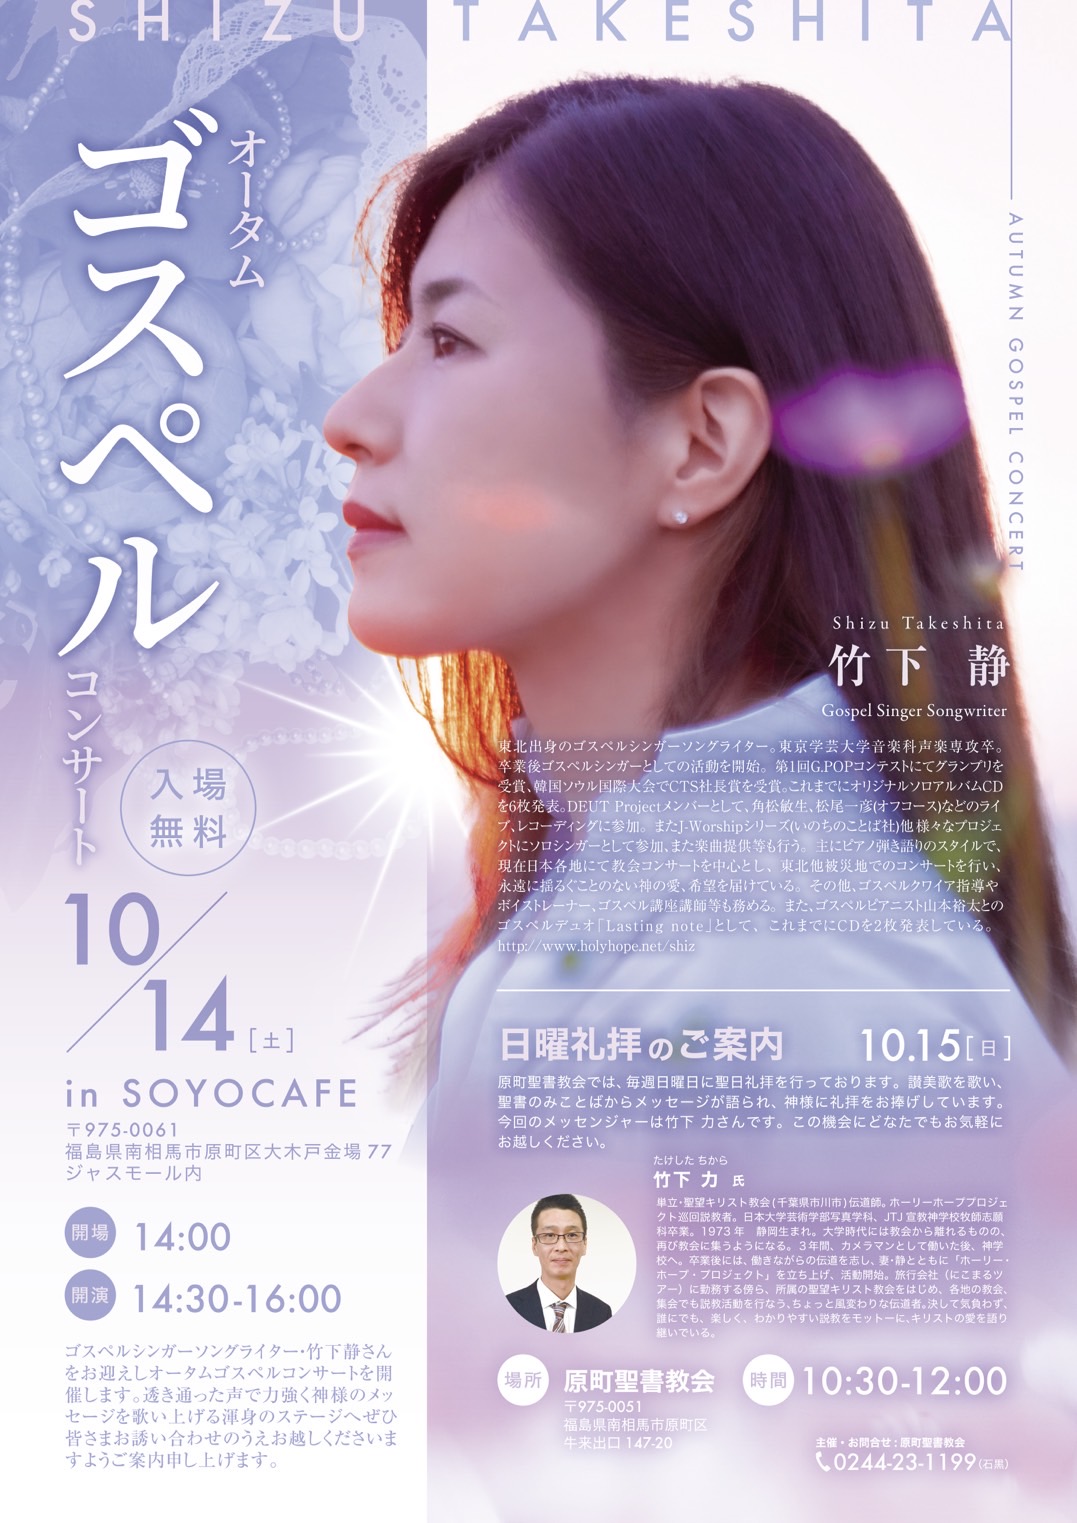 オータムゴスペルコンサート in Soyo Cafe(原町聖書教会) @ SOYO CAFE(ジャスモール内) | 南相馬市 | 福島県 | 日本